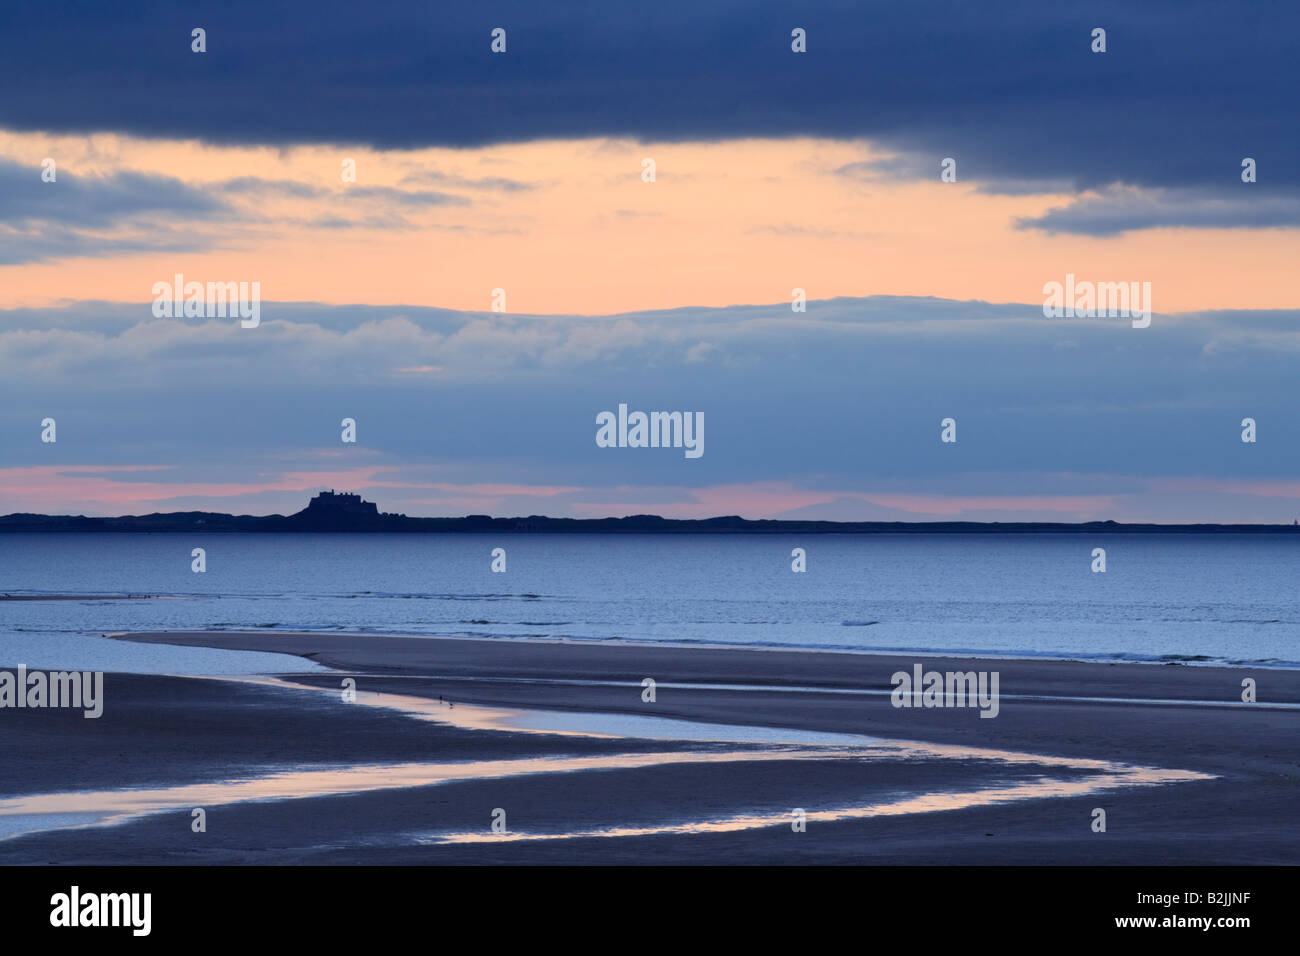 L'île de Lindisfarne (saints) silhouetté contre un coucher de soleil d'été à l'échelle de Budle Bay sur la côte de Northumbrie, Angleterre Banque D'Images